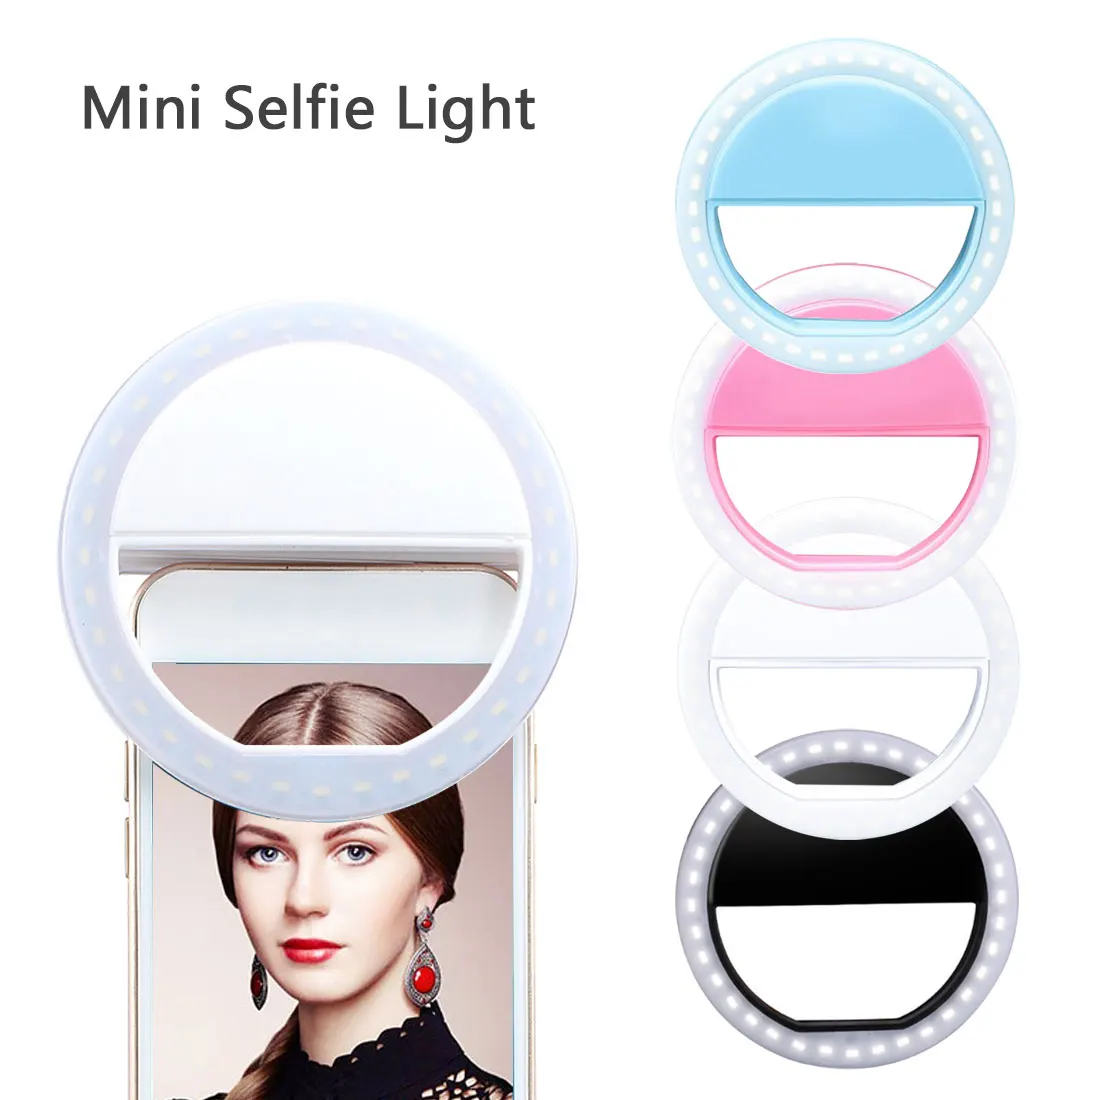 

Selfie LED Ring Fill Light Portable Mobile Phone 36 LEDS Selfie Lamp 3 Levels Lighting Luminous Ring Clip For All Cell Phones